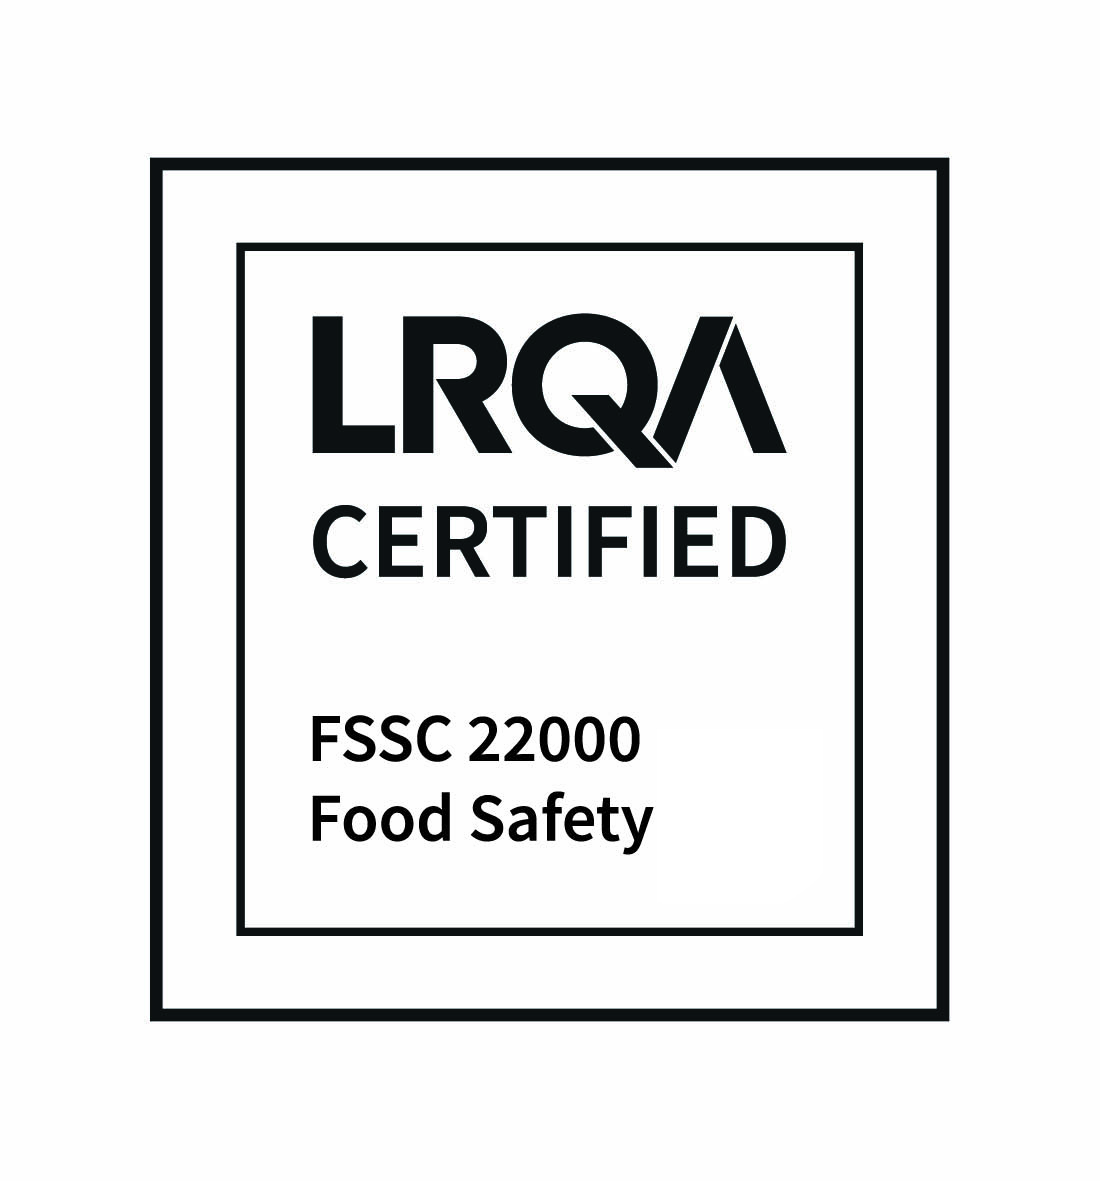 fssc 22000 food safety cmyk